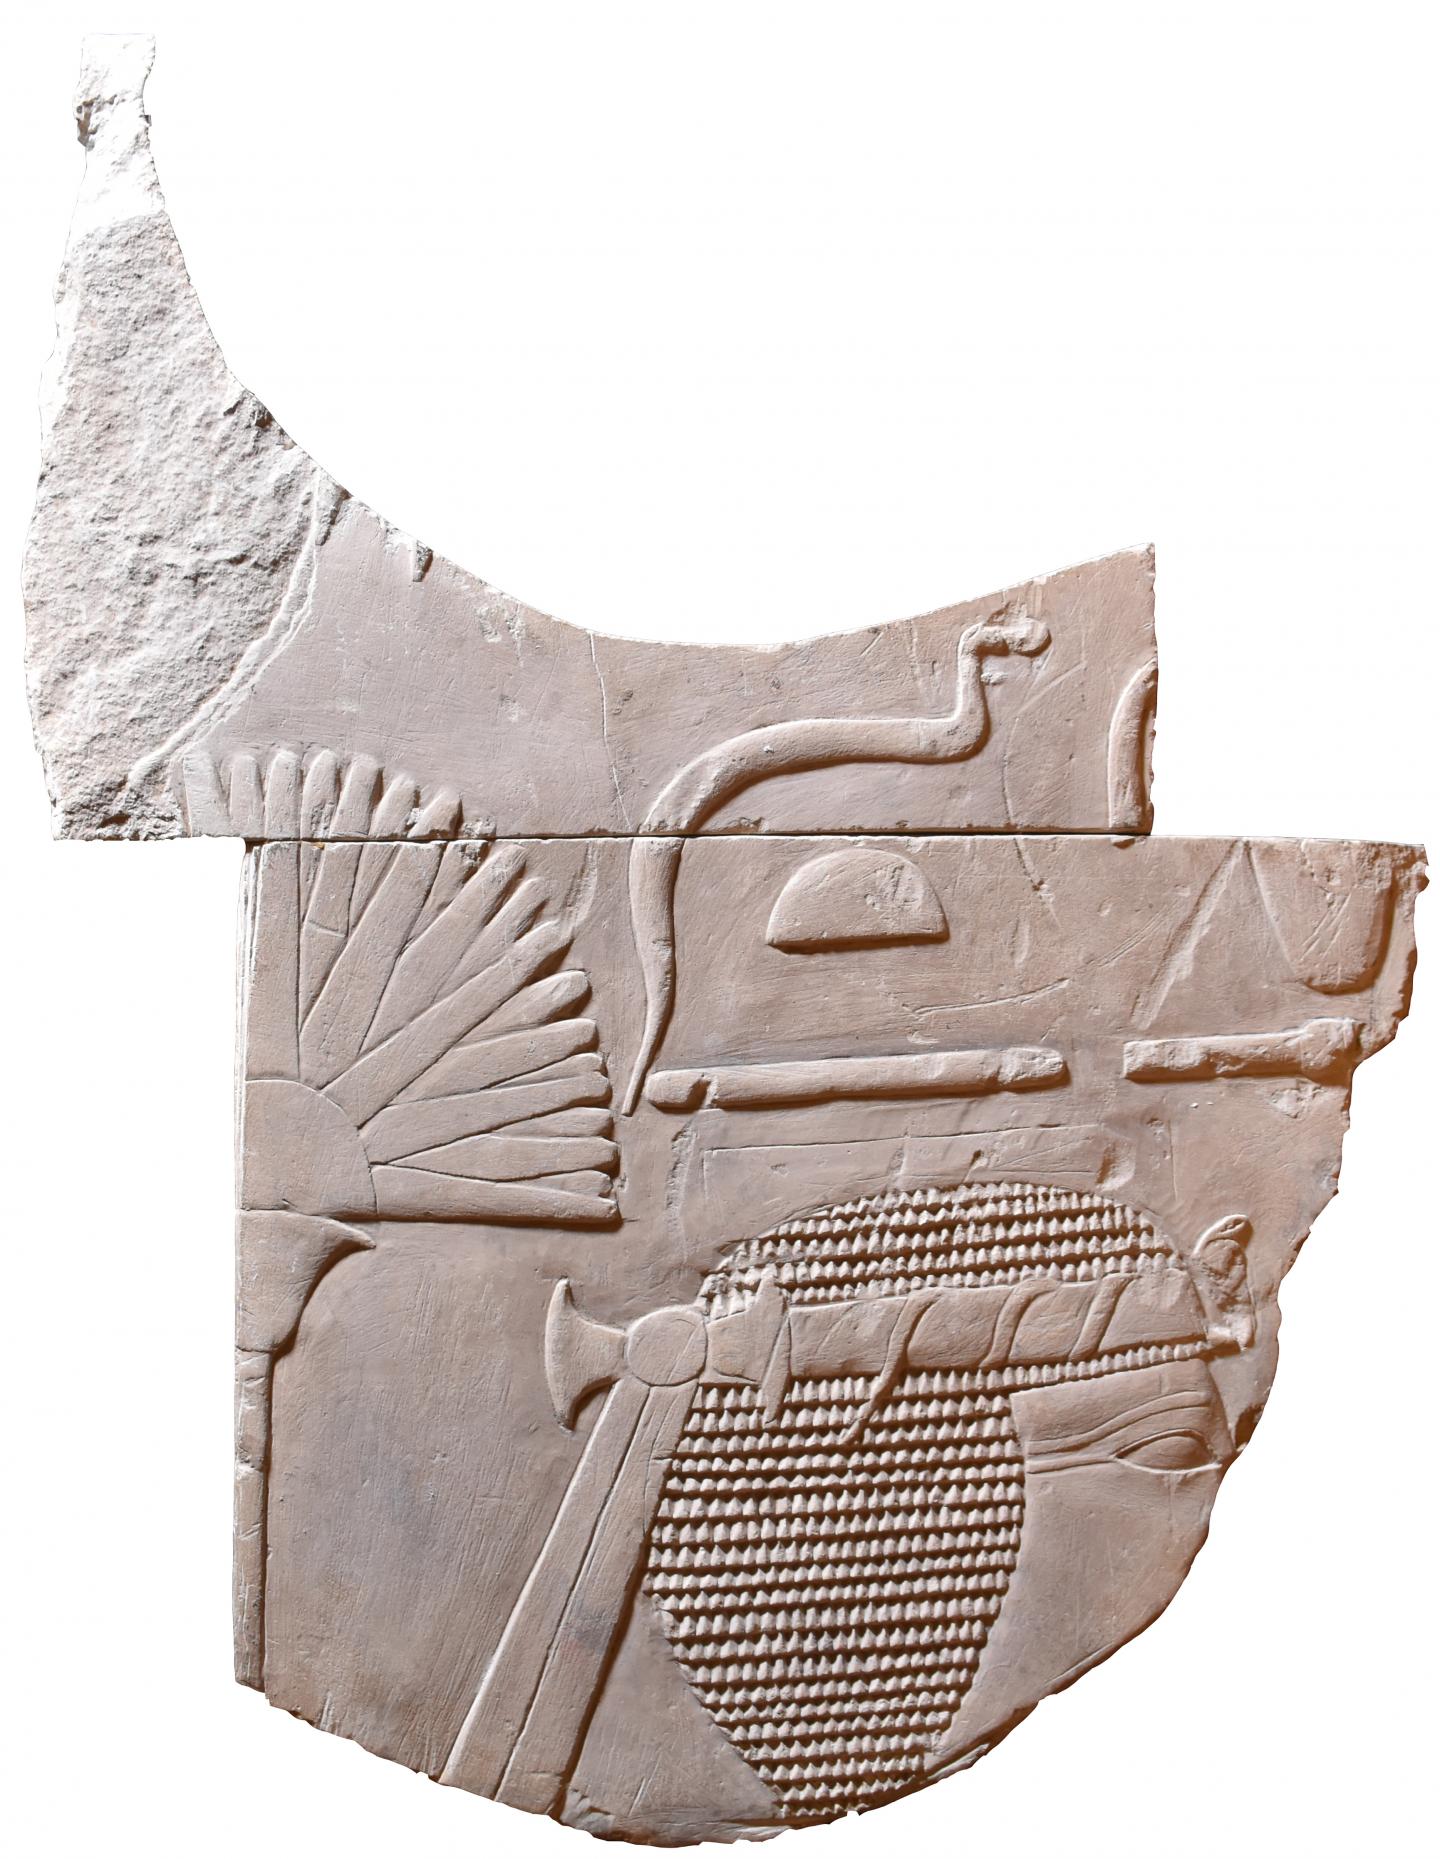 Hatshepsut tablet